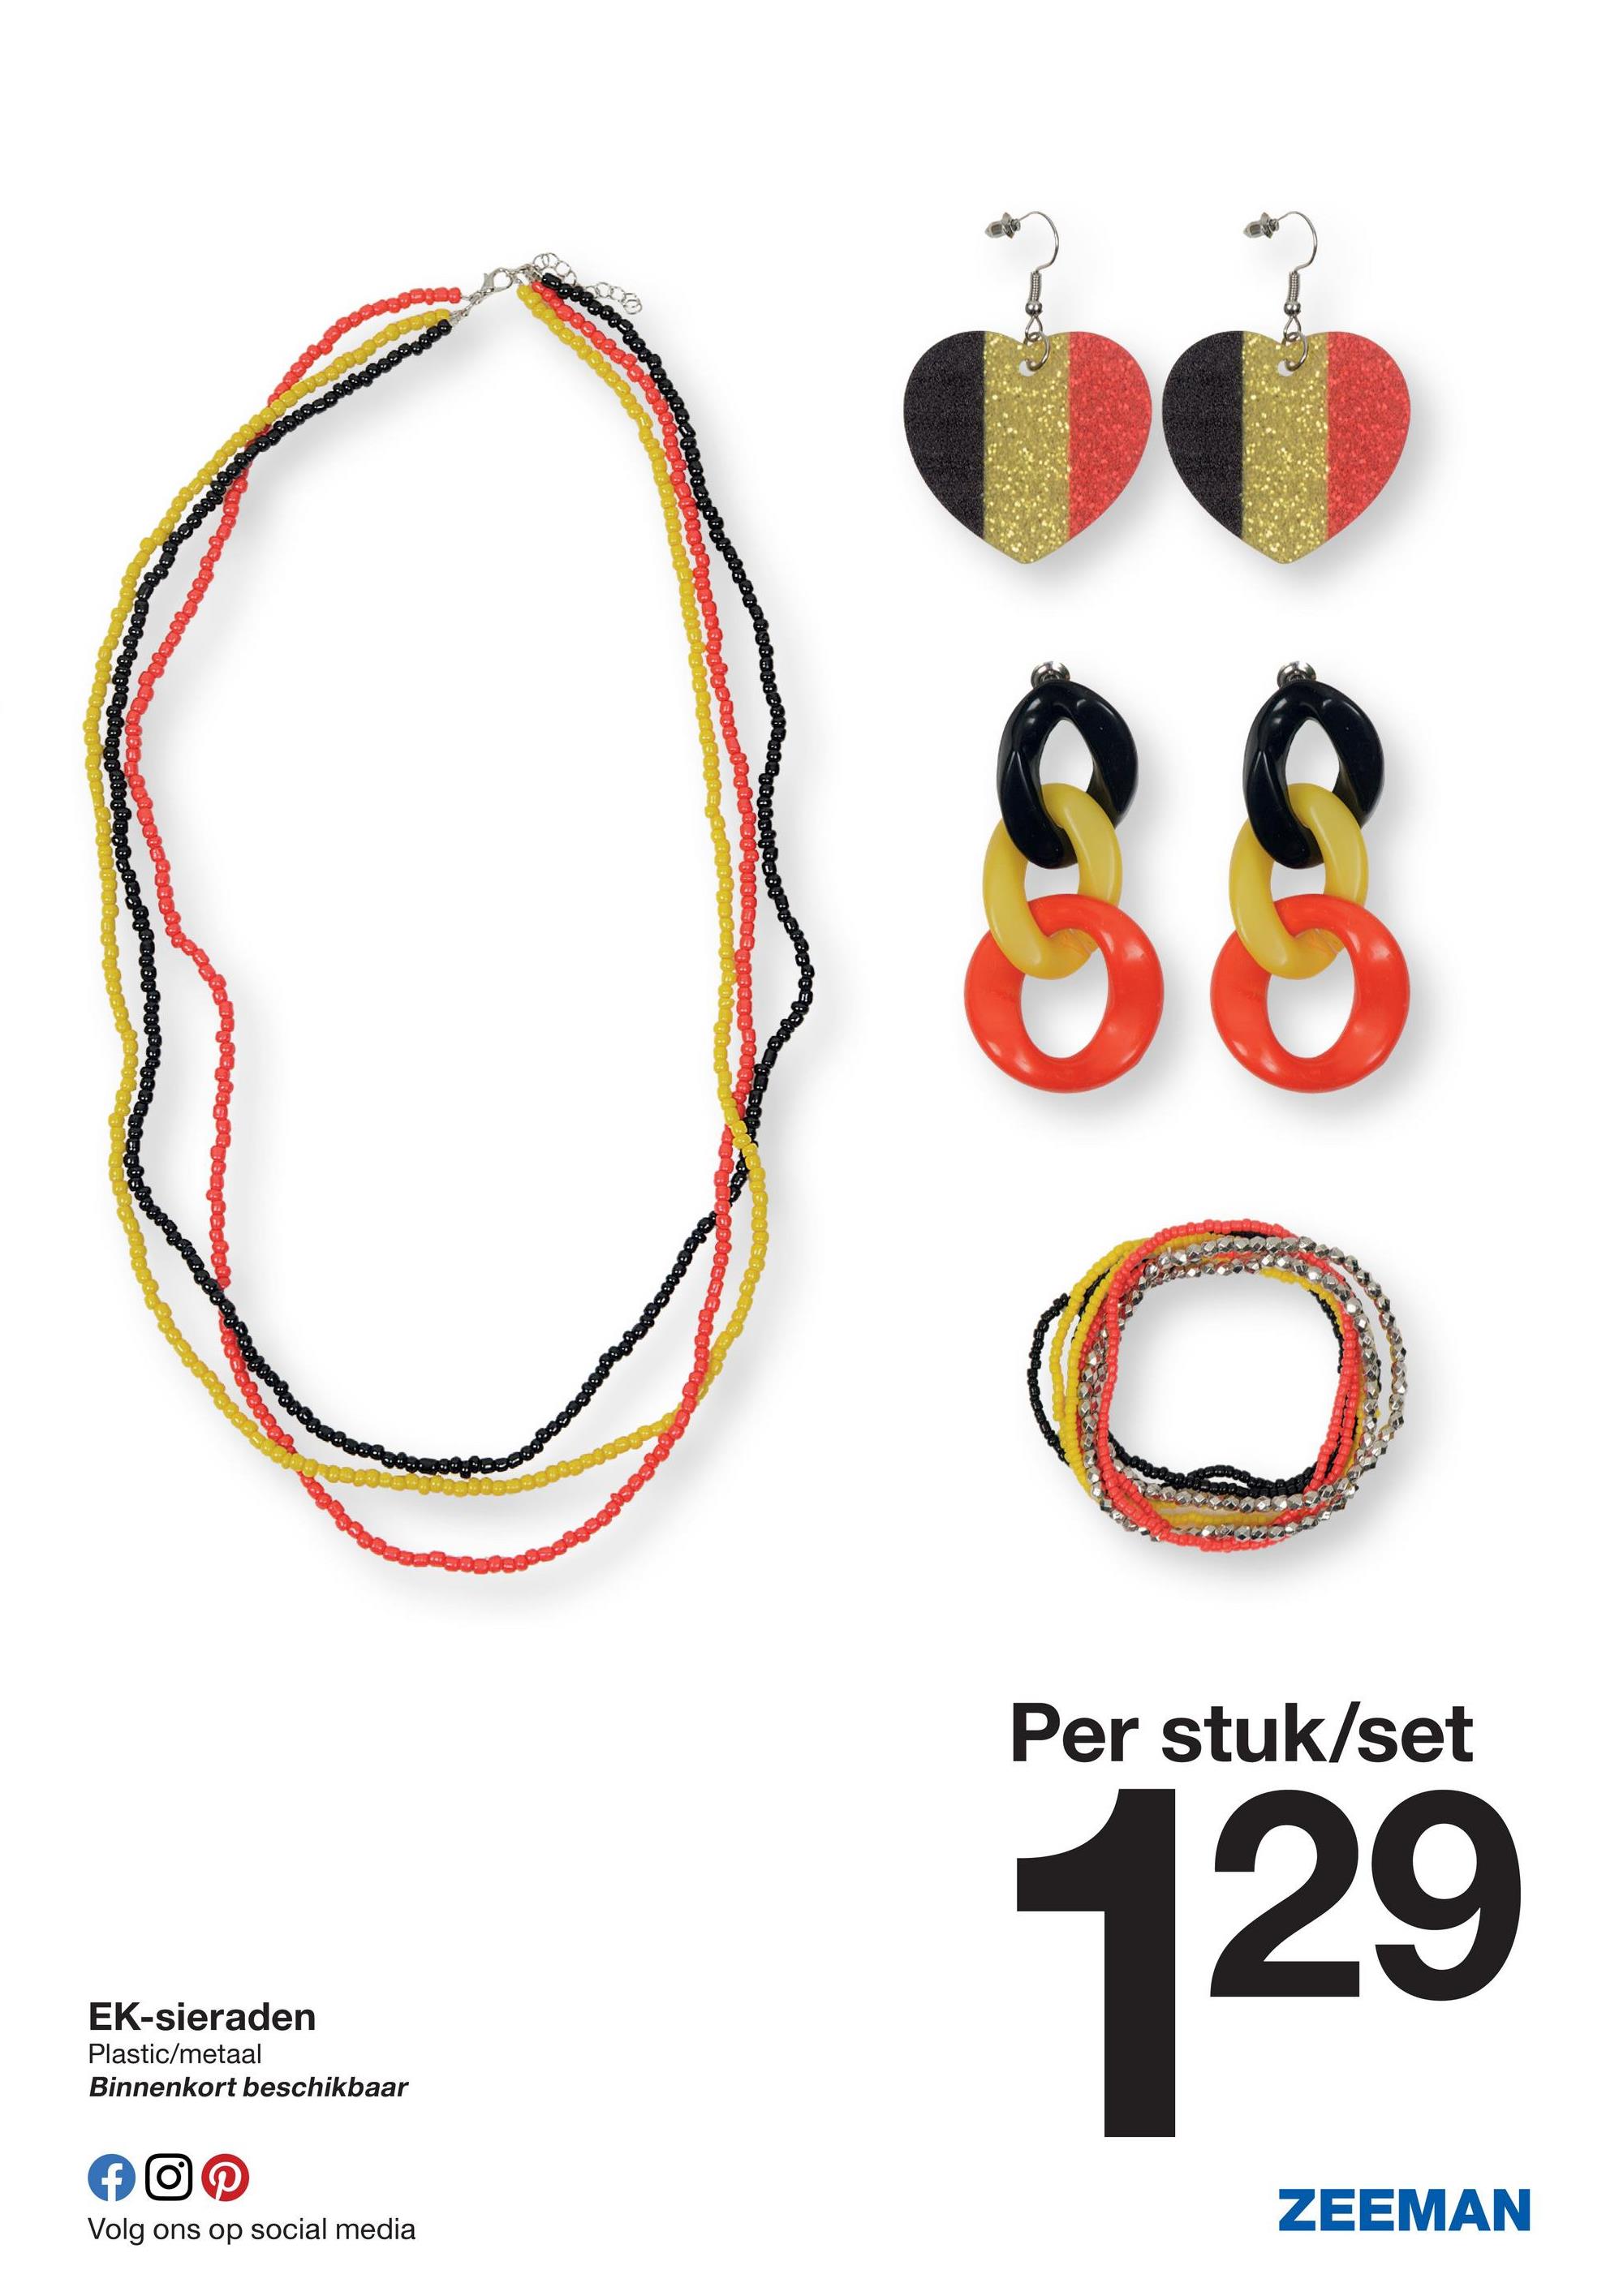 EK-sieraden
Plastic/metaal
Binnenkort beschikbaar
f
Volg ons op social media
$8
Per stuk/set
129
ZEEMAN